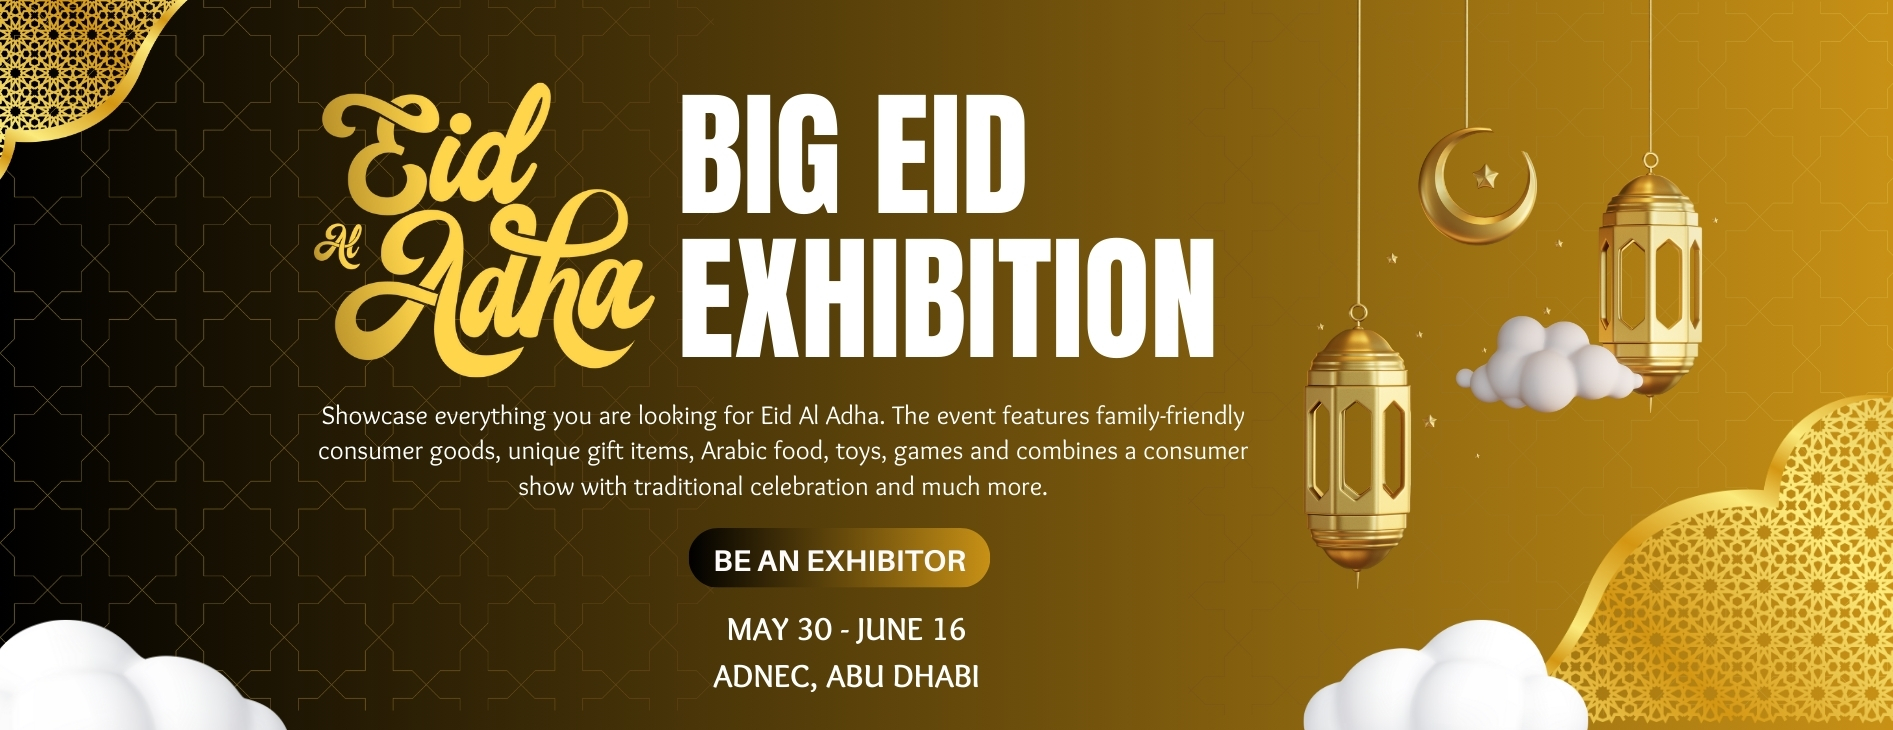 Big Eid Exhibition